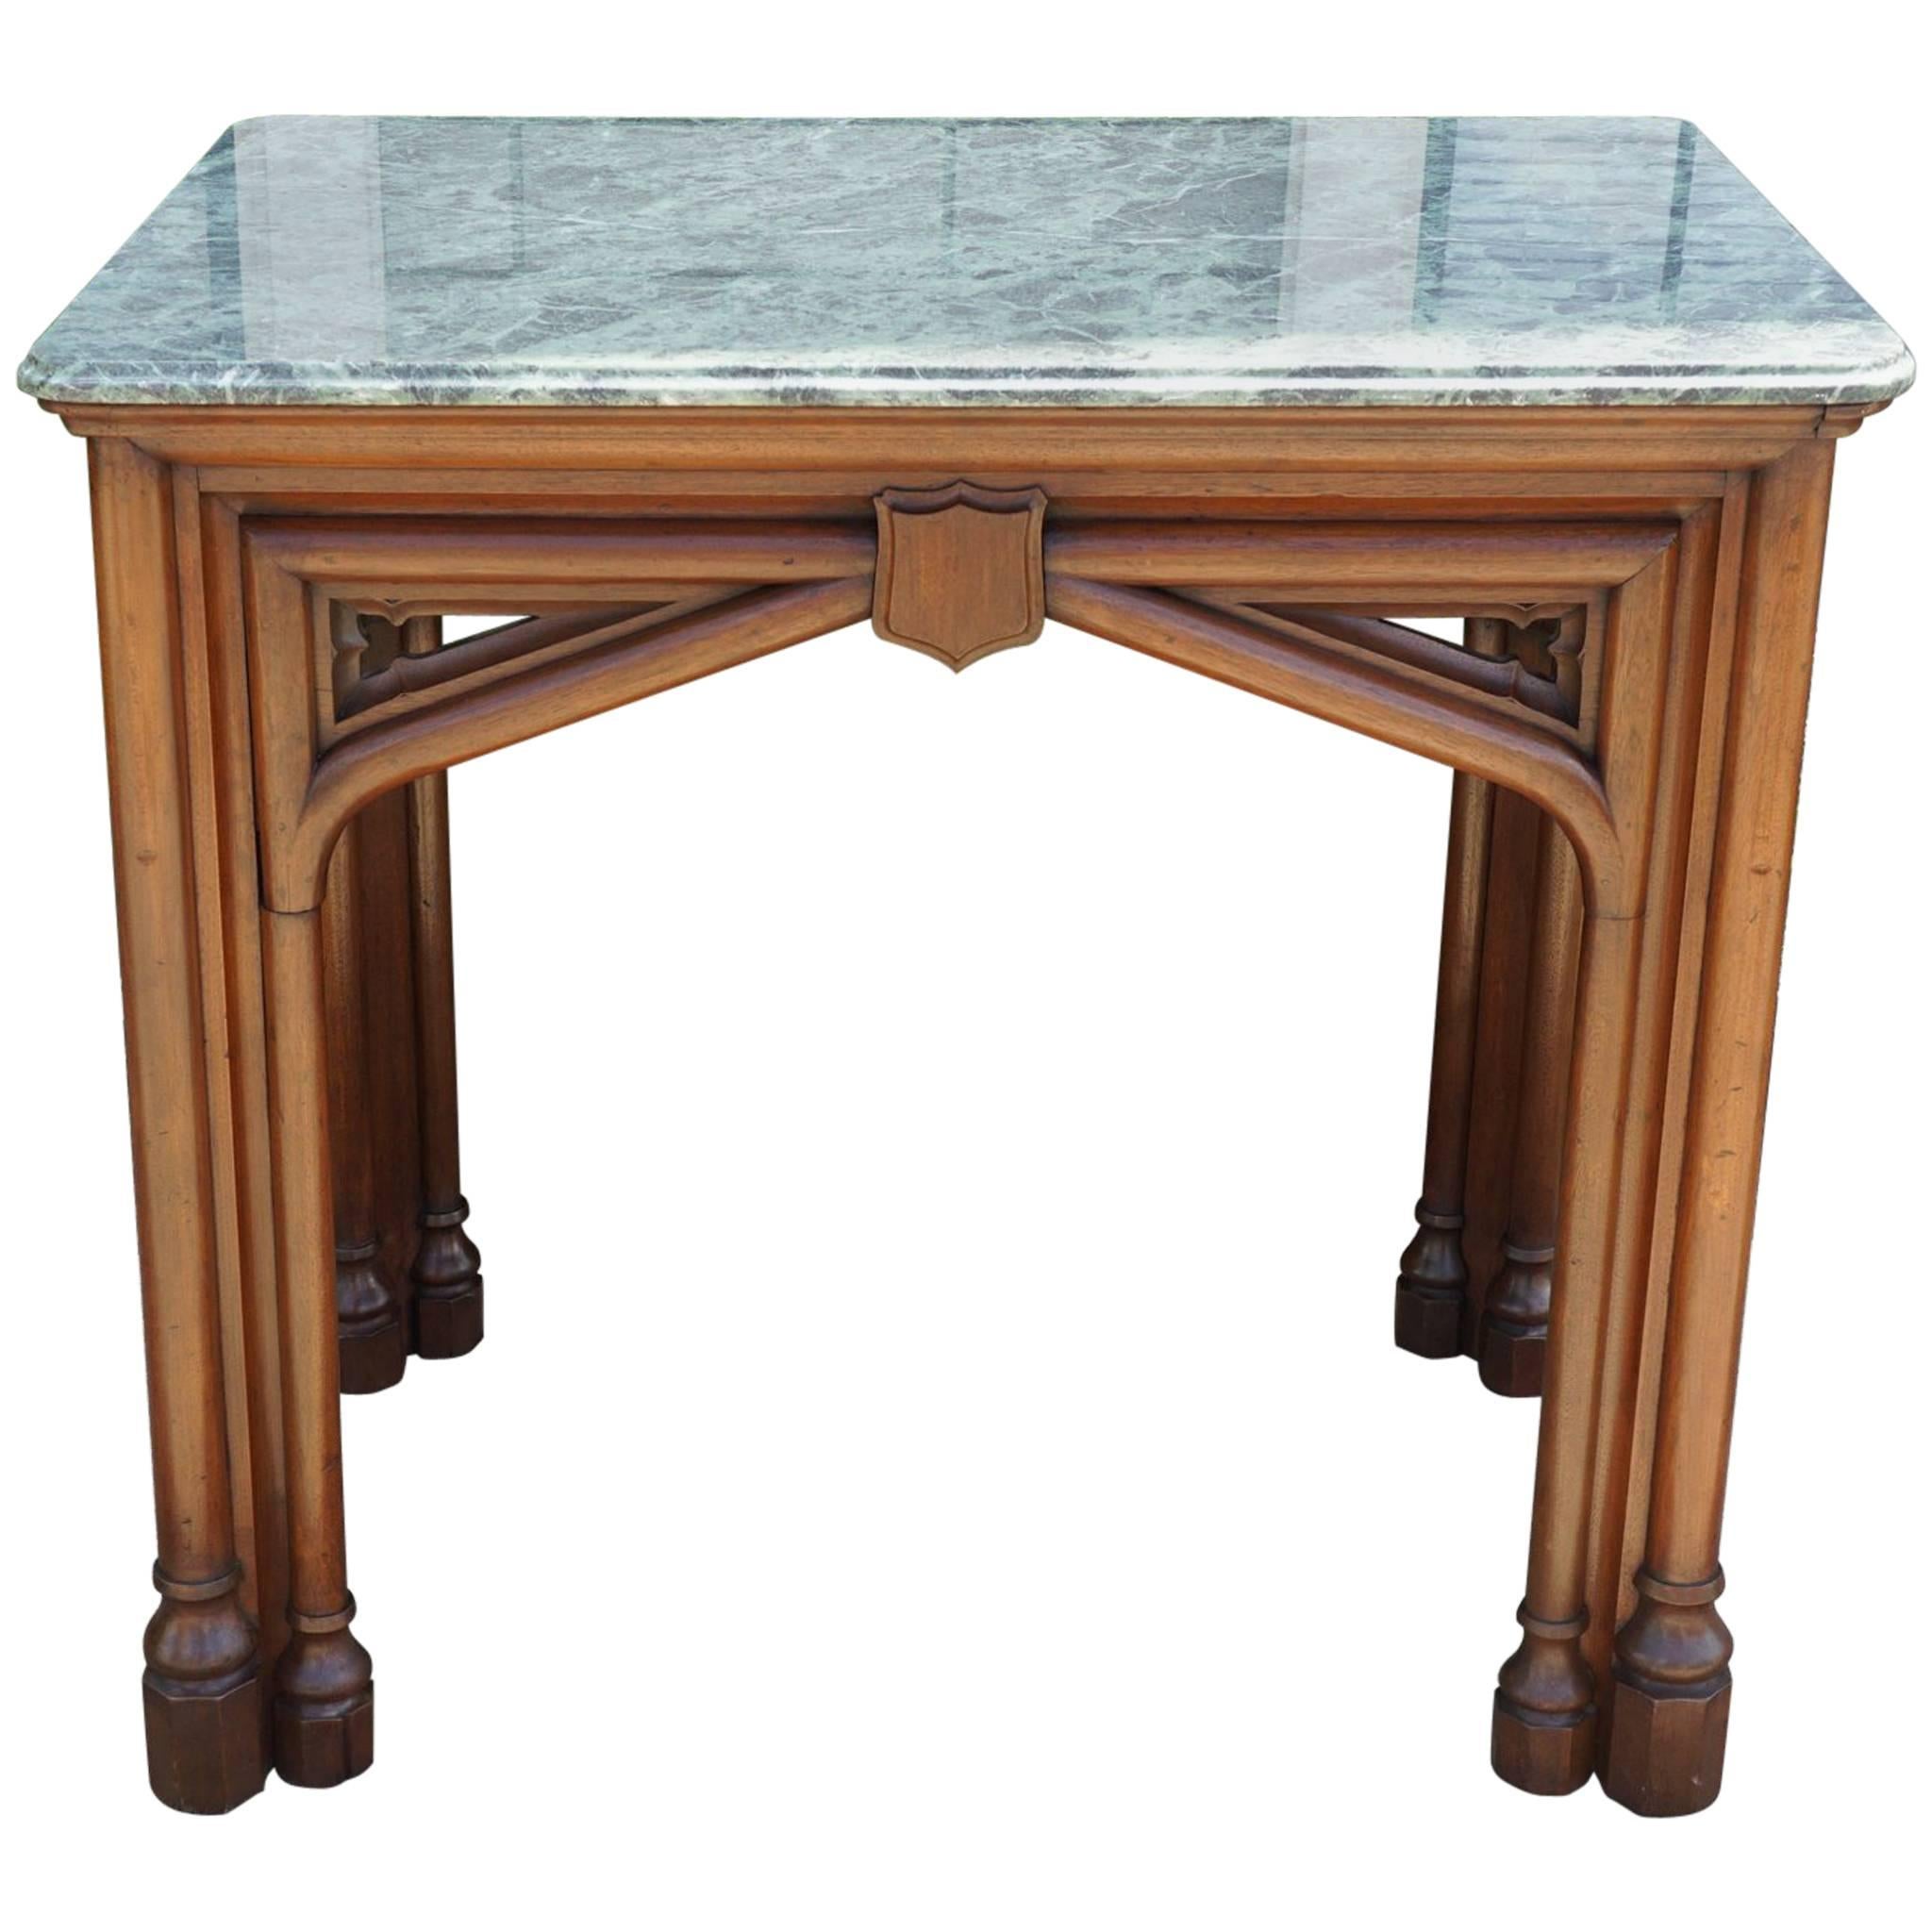 Table de centre ou table de bibliothèque en chêne du 19ème siècle de style néo-gothique avec dessus en marbre anglais